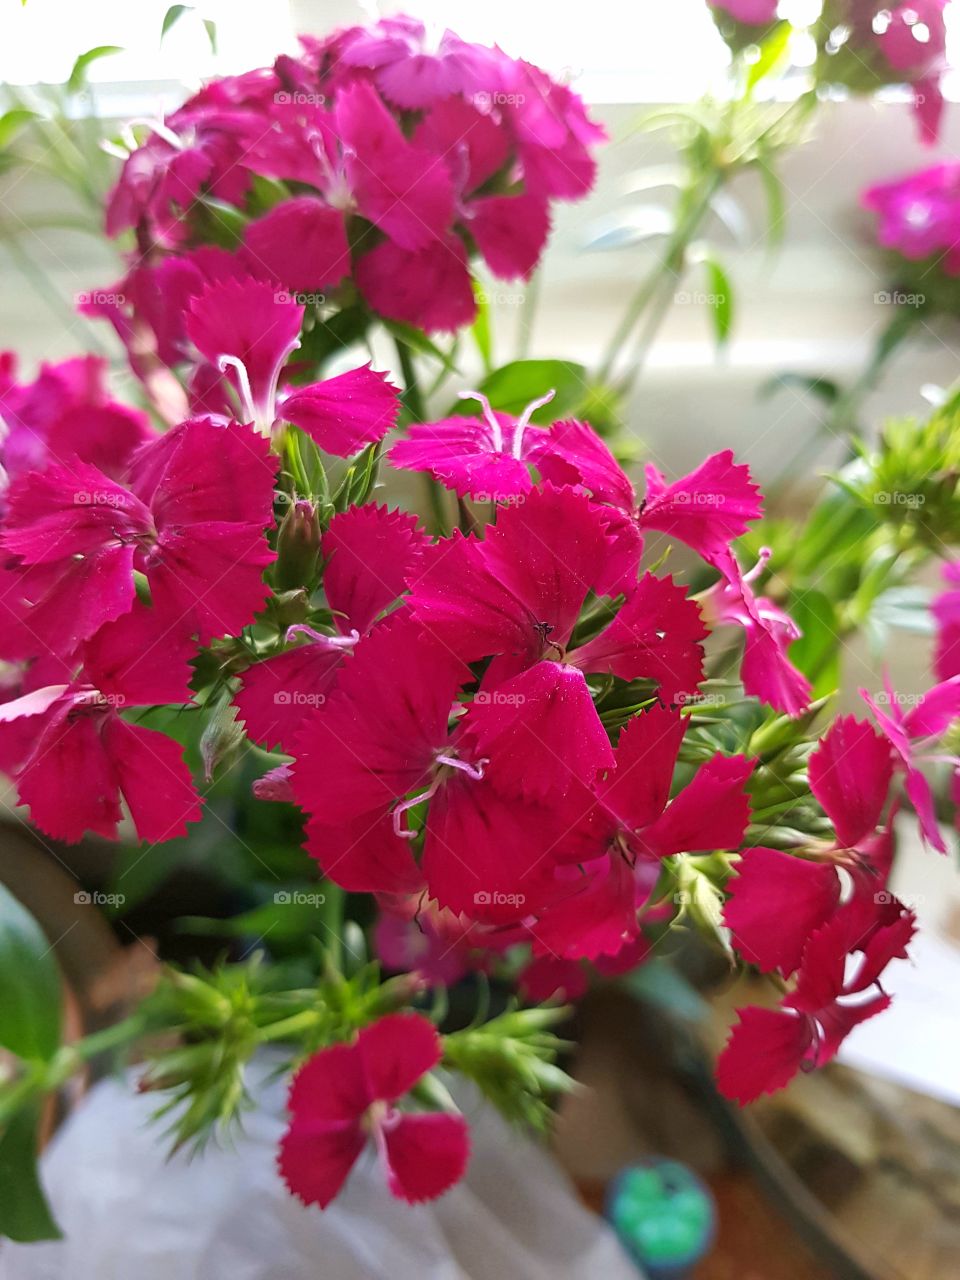 pink flowers on vase